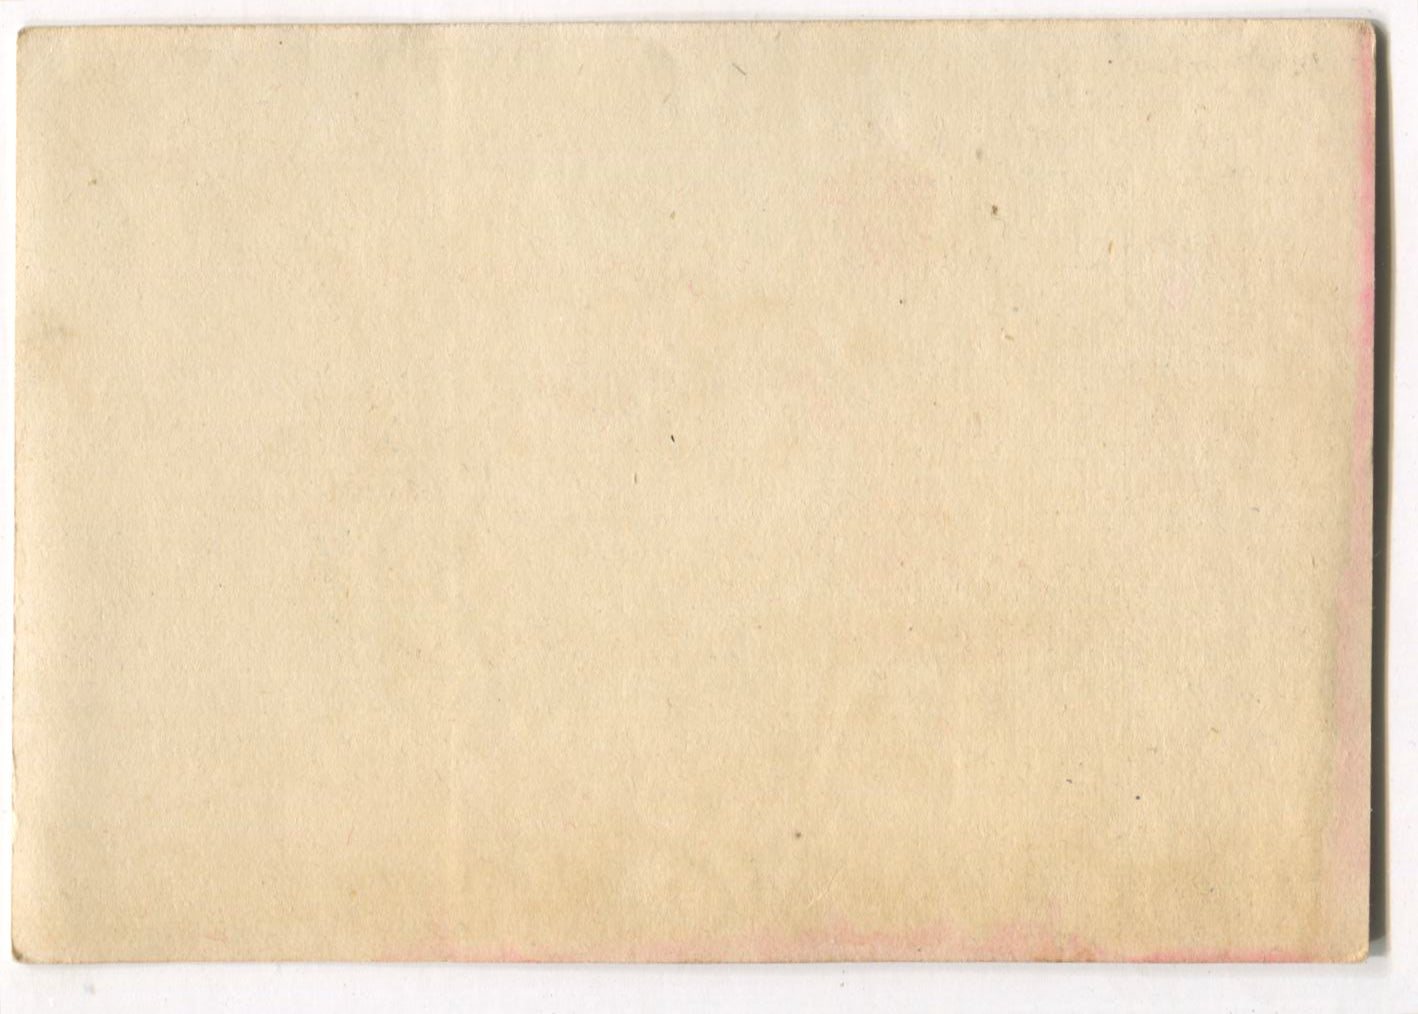 Flint & Warren Dry Goods, Bridgeport, CT Antique Trade Card - 4.5" x 3"